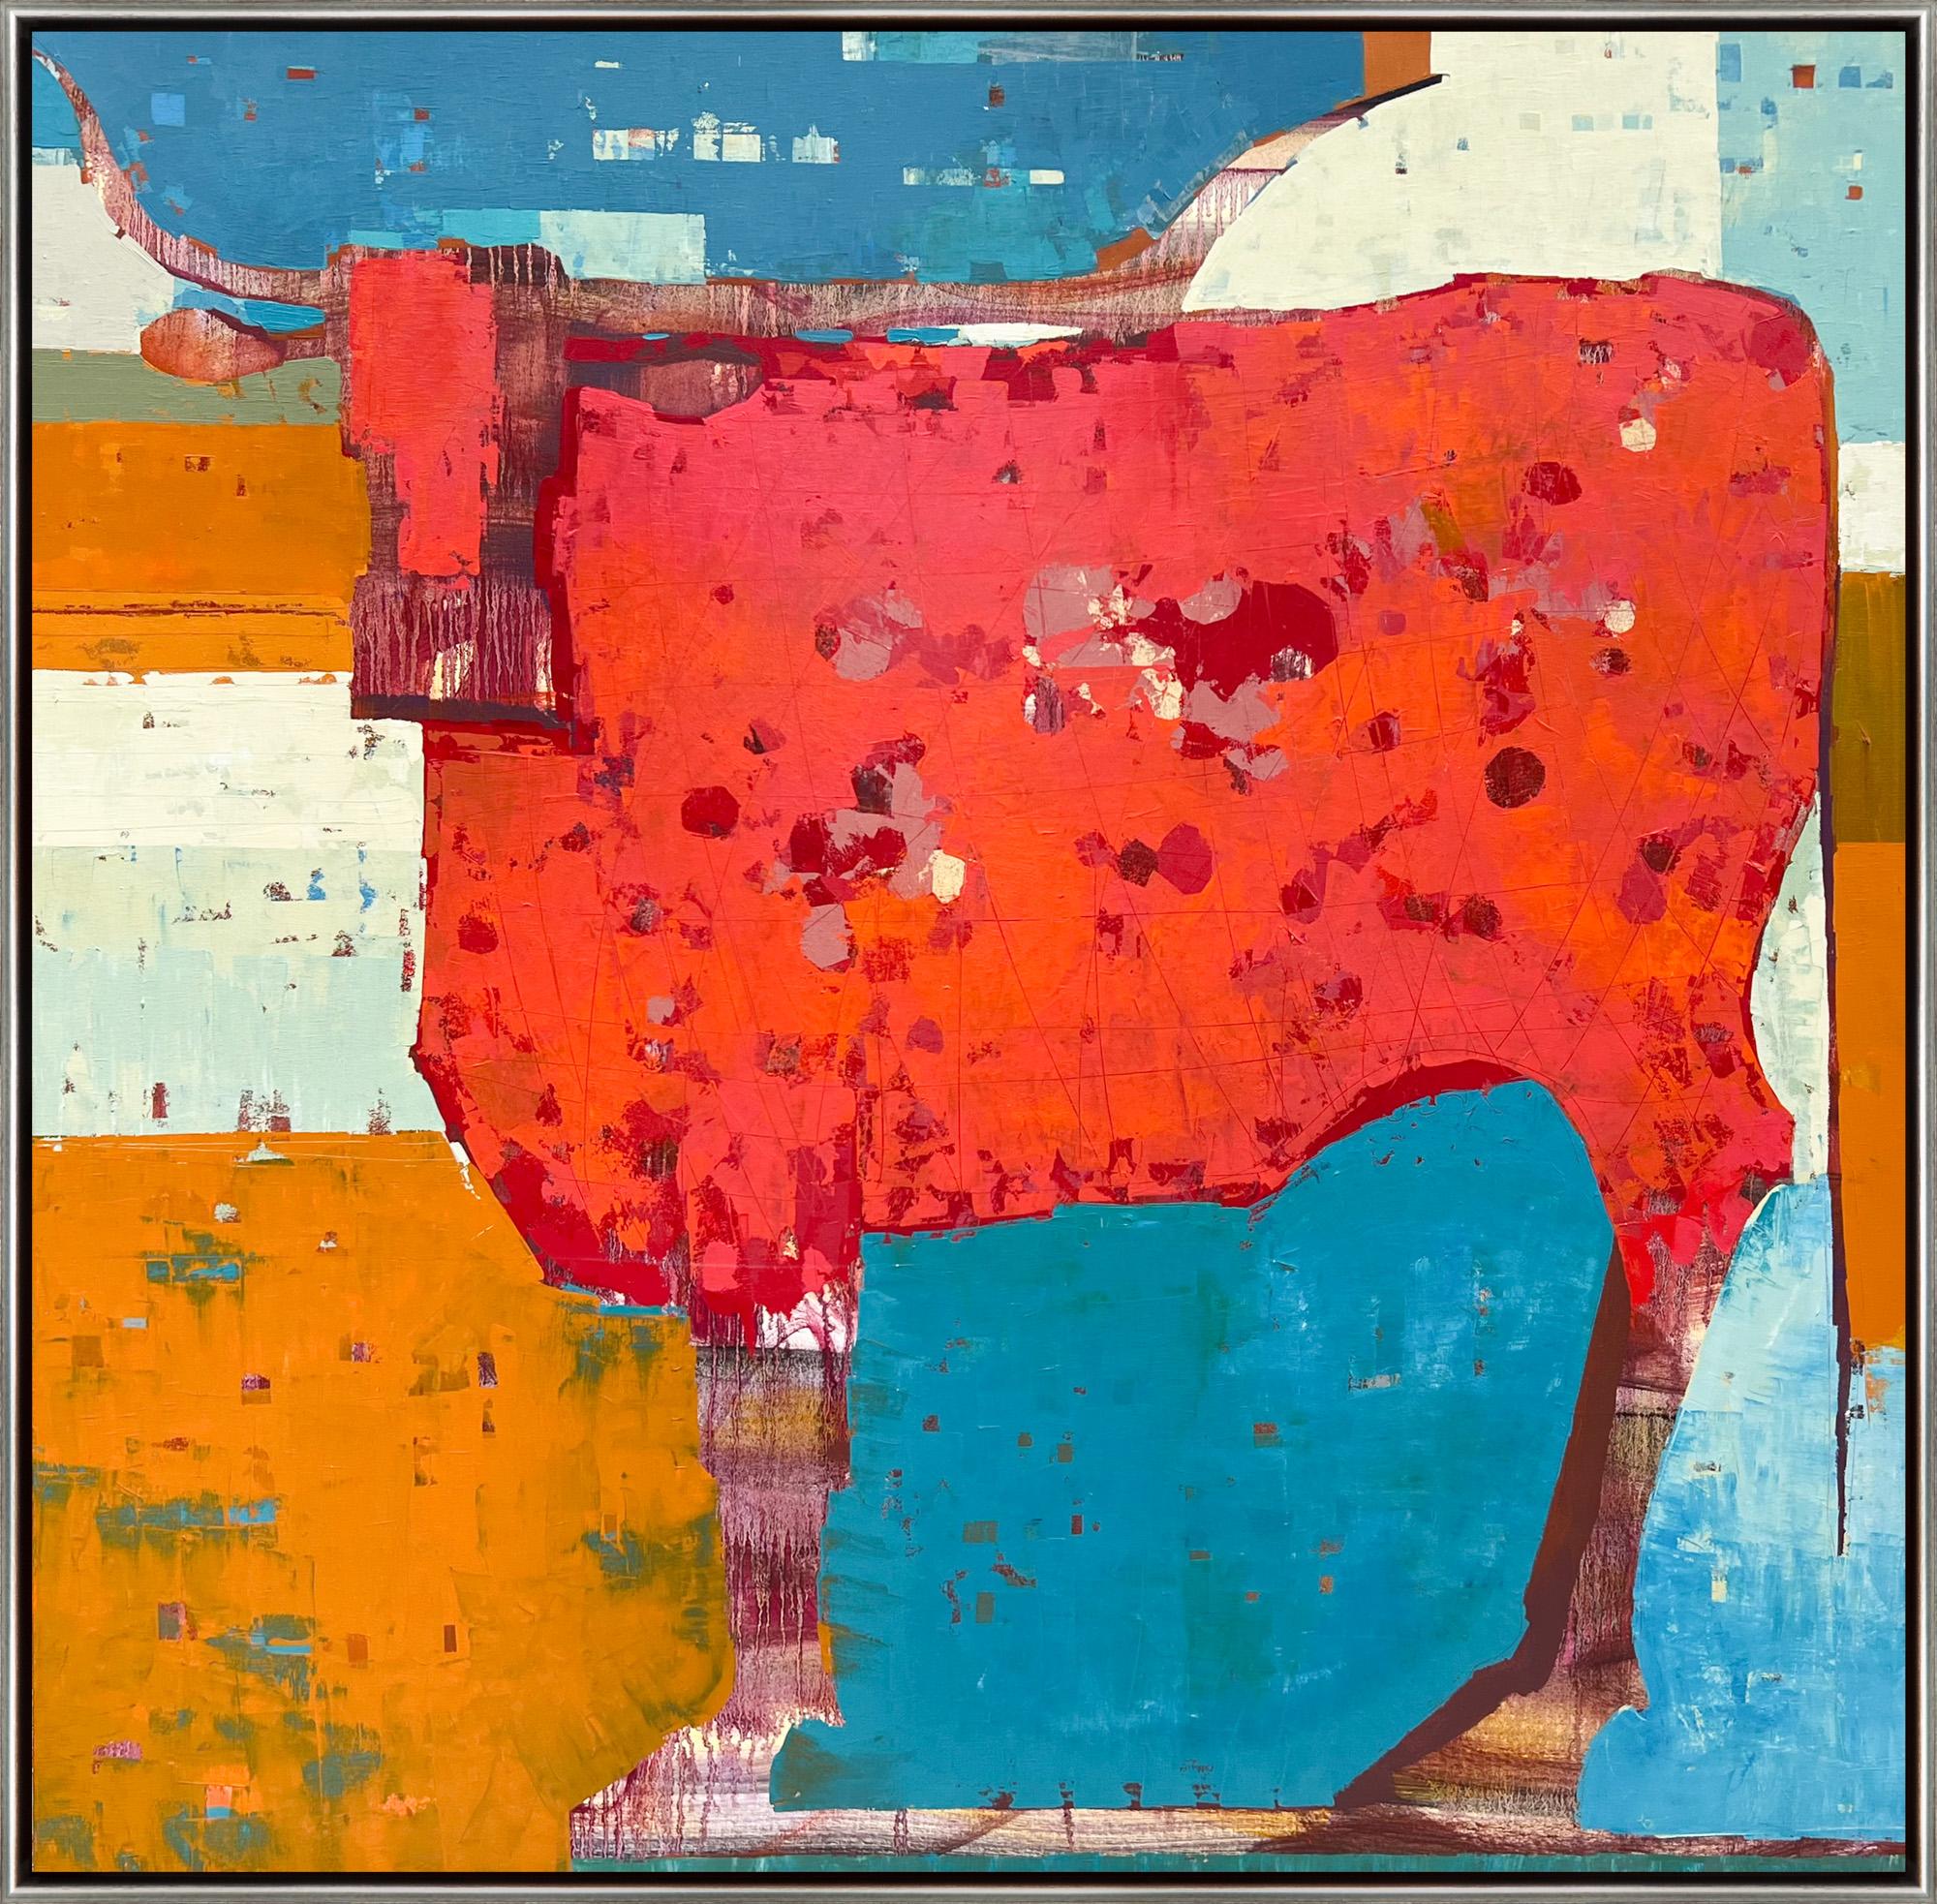 Abstract Painting Sherri Belassen - "Tangier Basin" Contemporary Abstract Longhorn Cow Peinture à l'huile sur toile encadrée